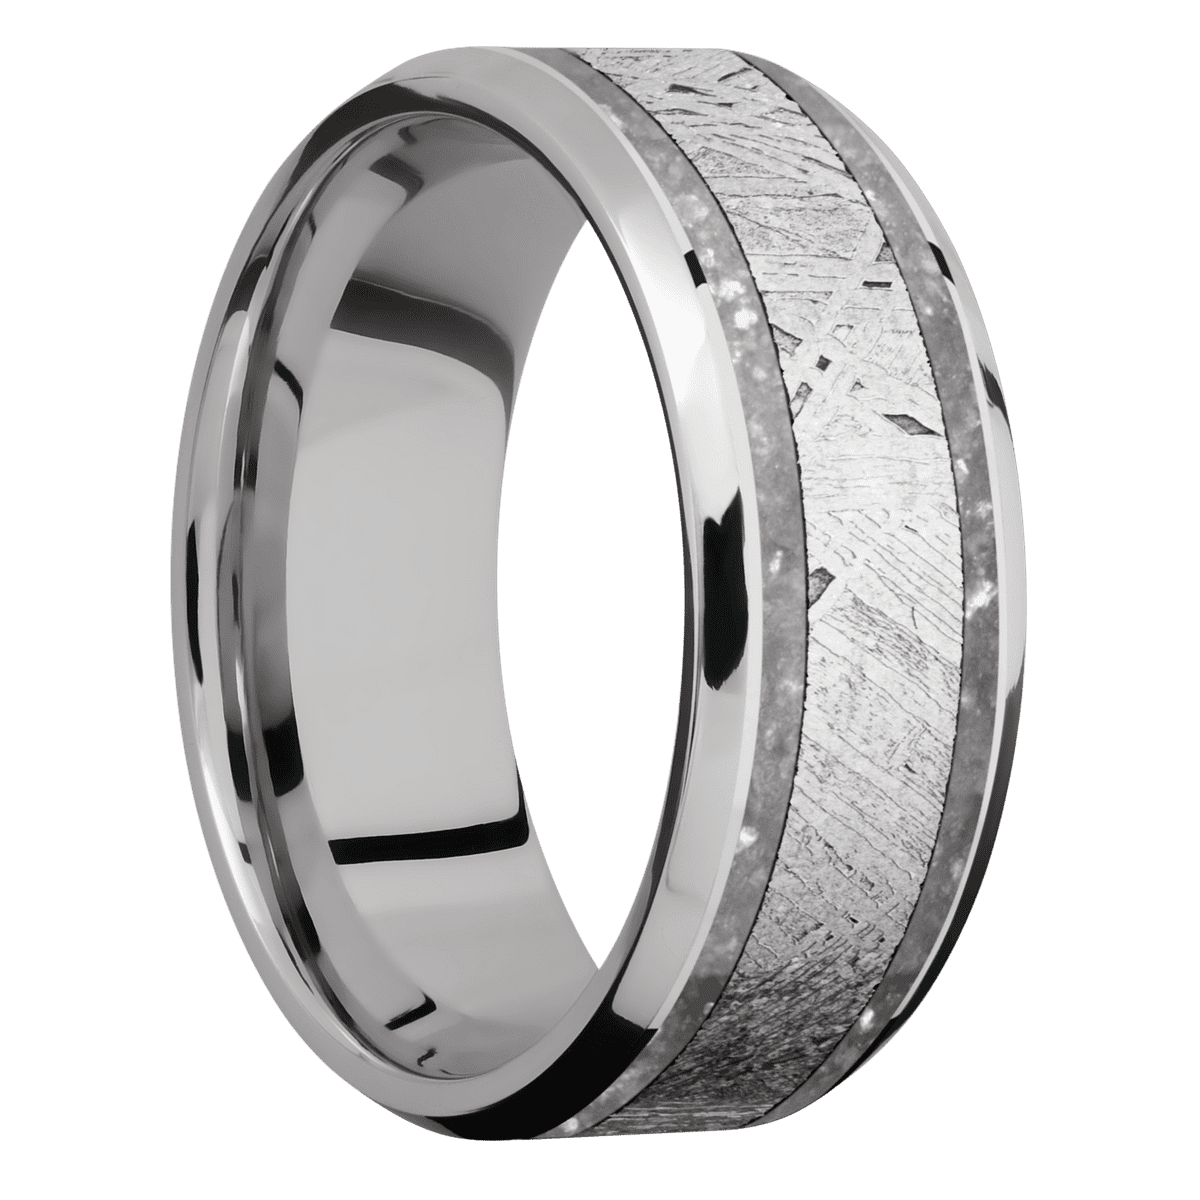 00 - Cobalt Chrome Ring